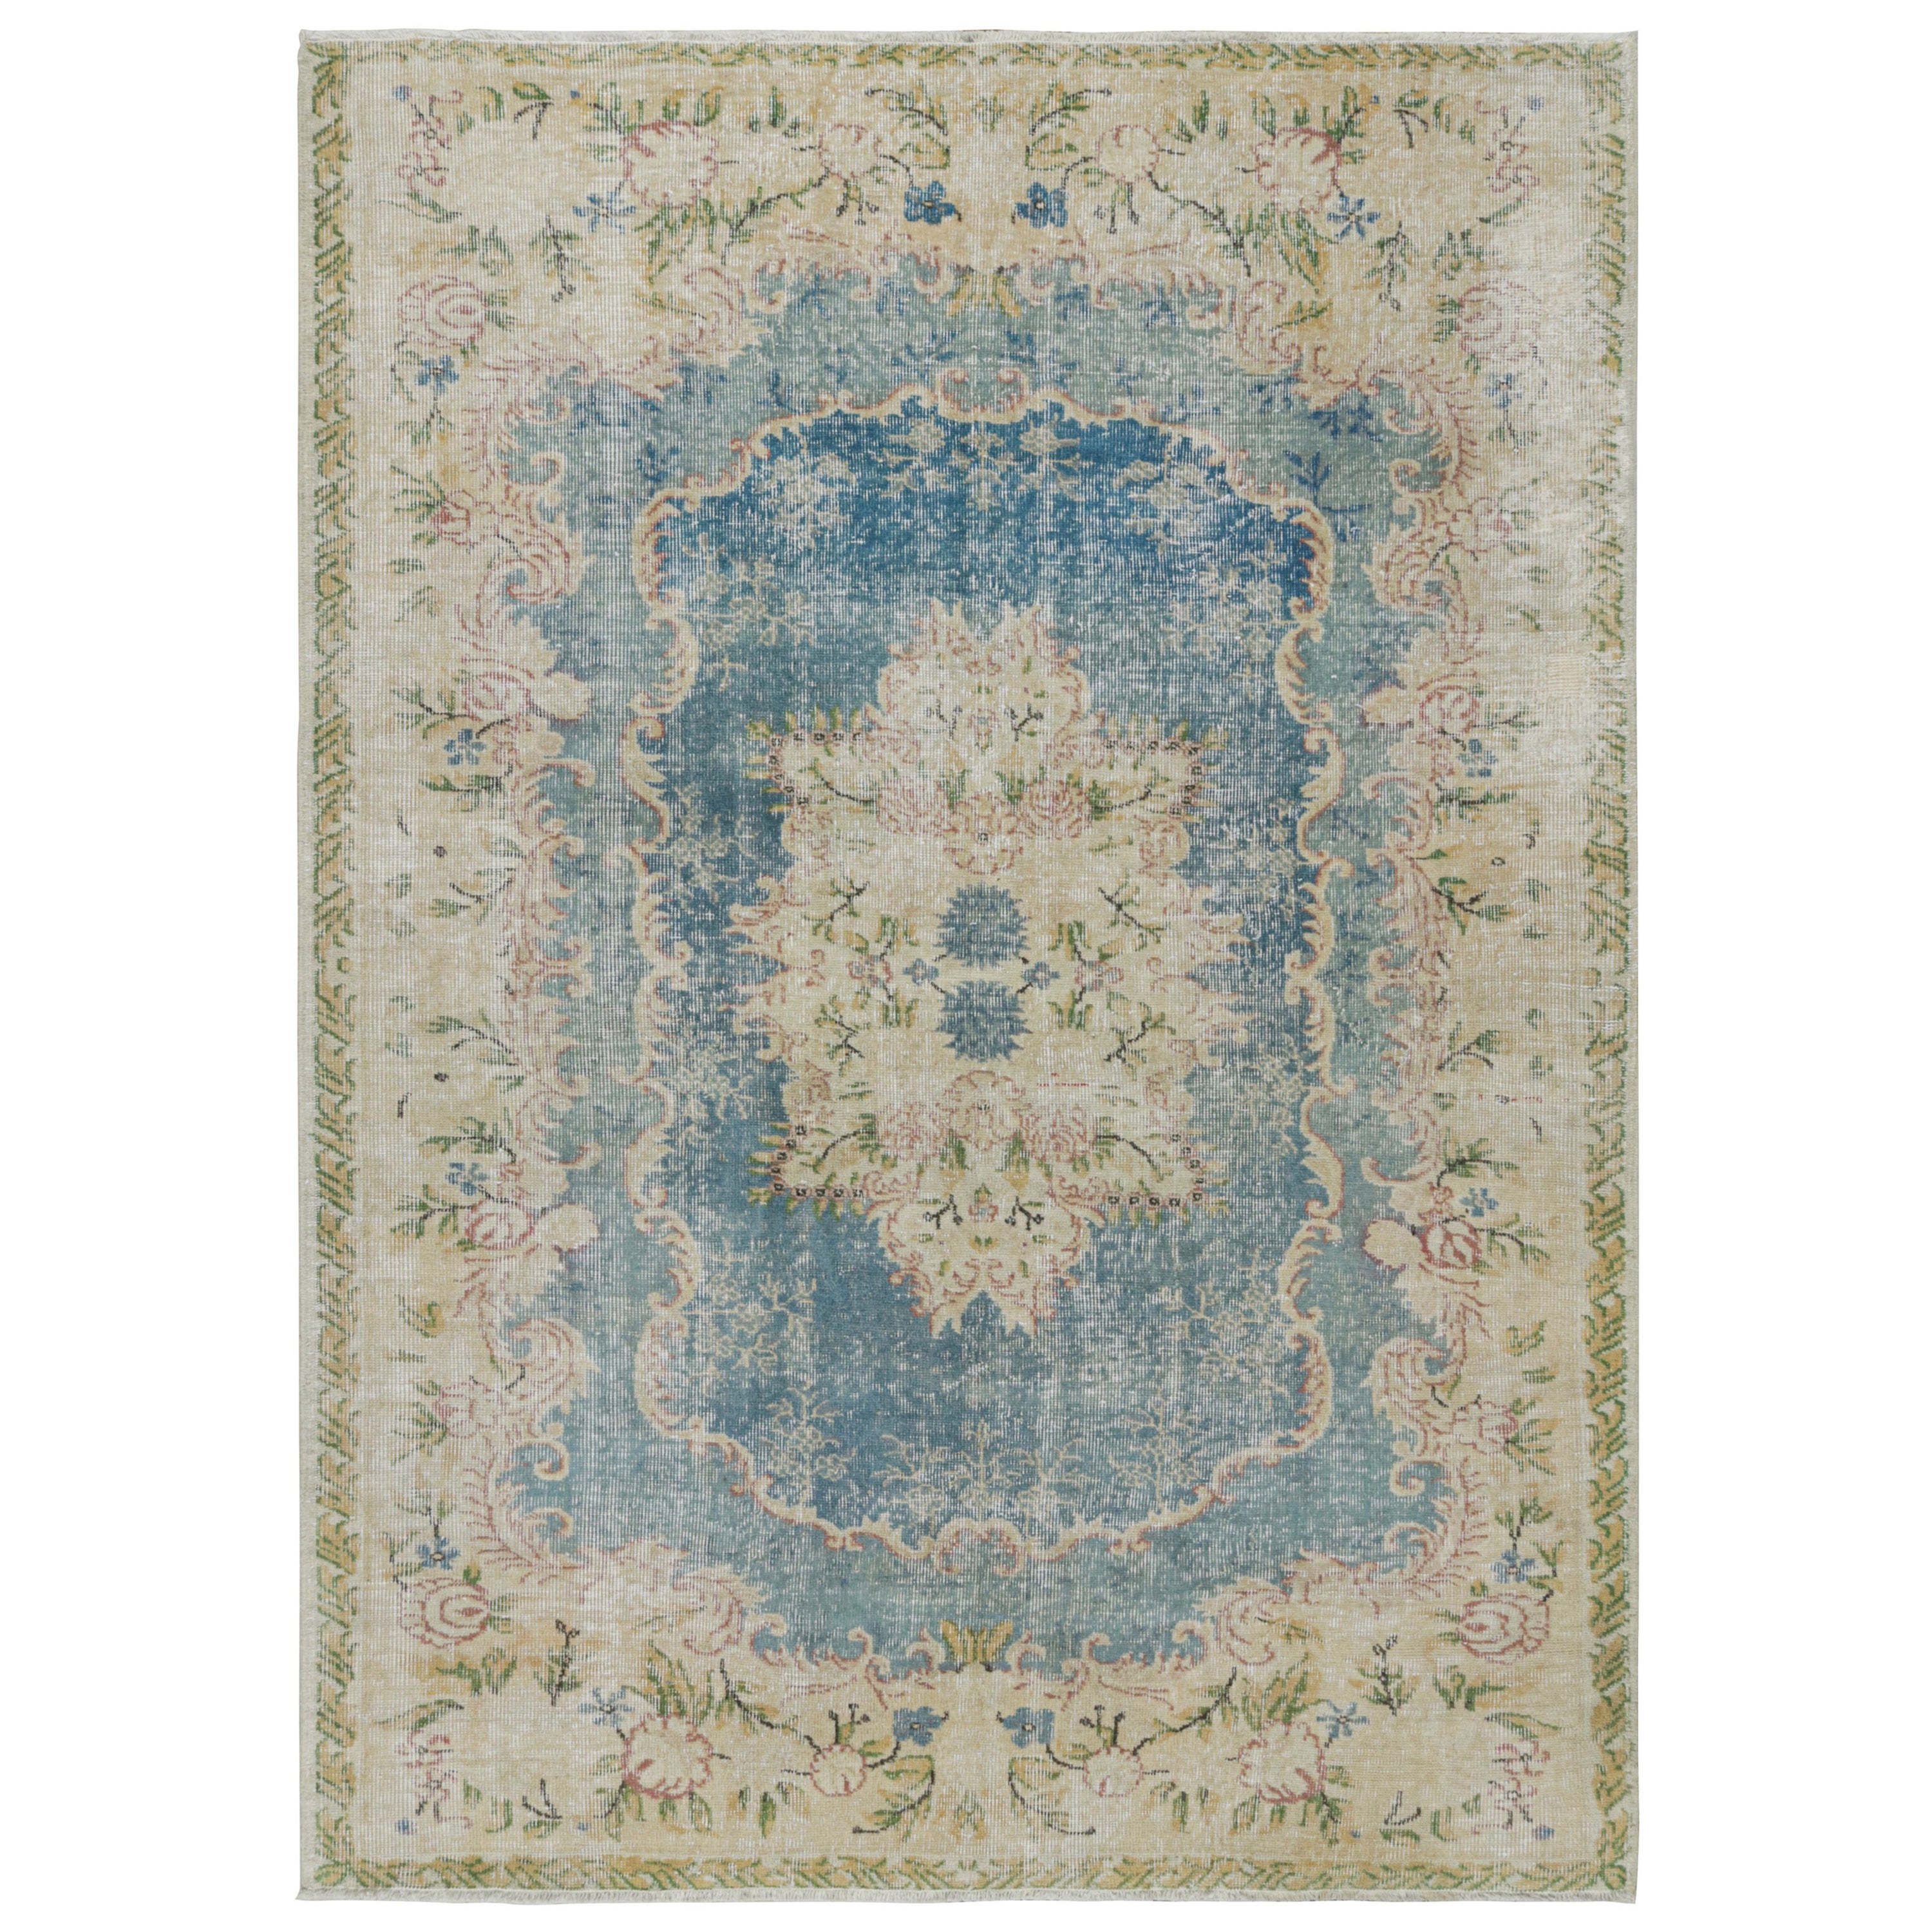 Rug & Kilim's Teppich im Aubusson-Stil in Beige mit floralen Mustern.